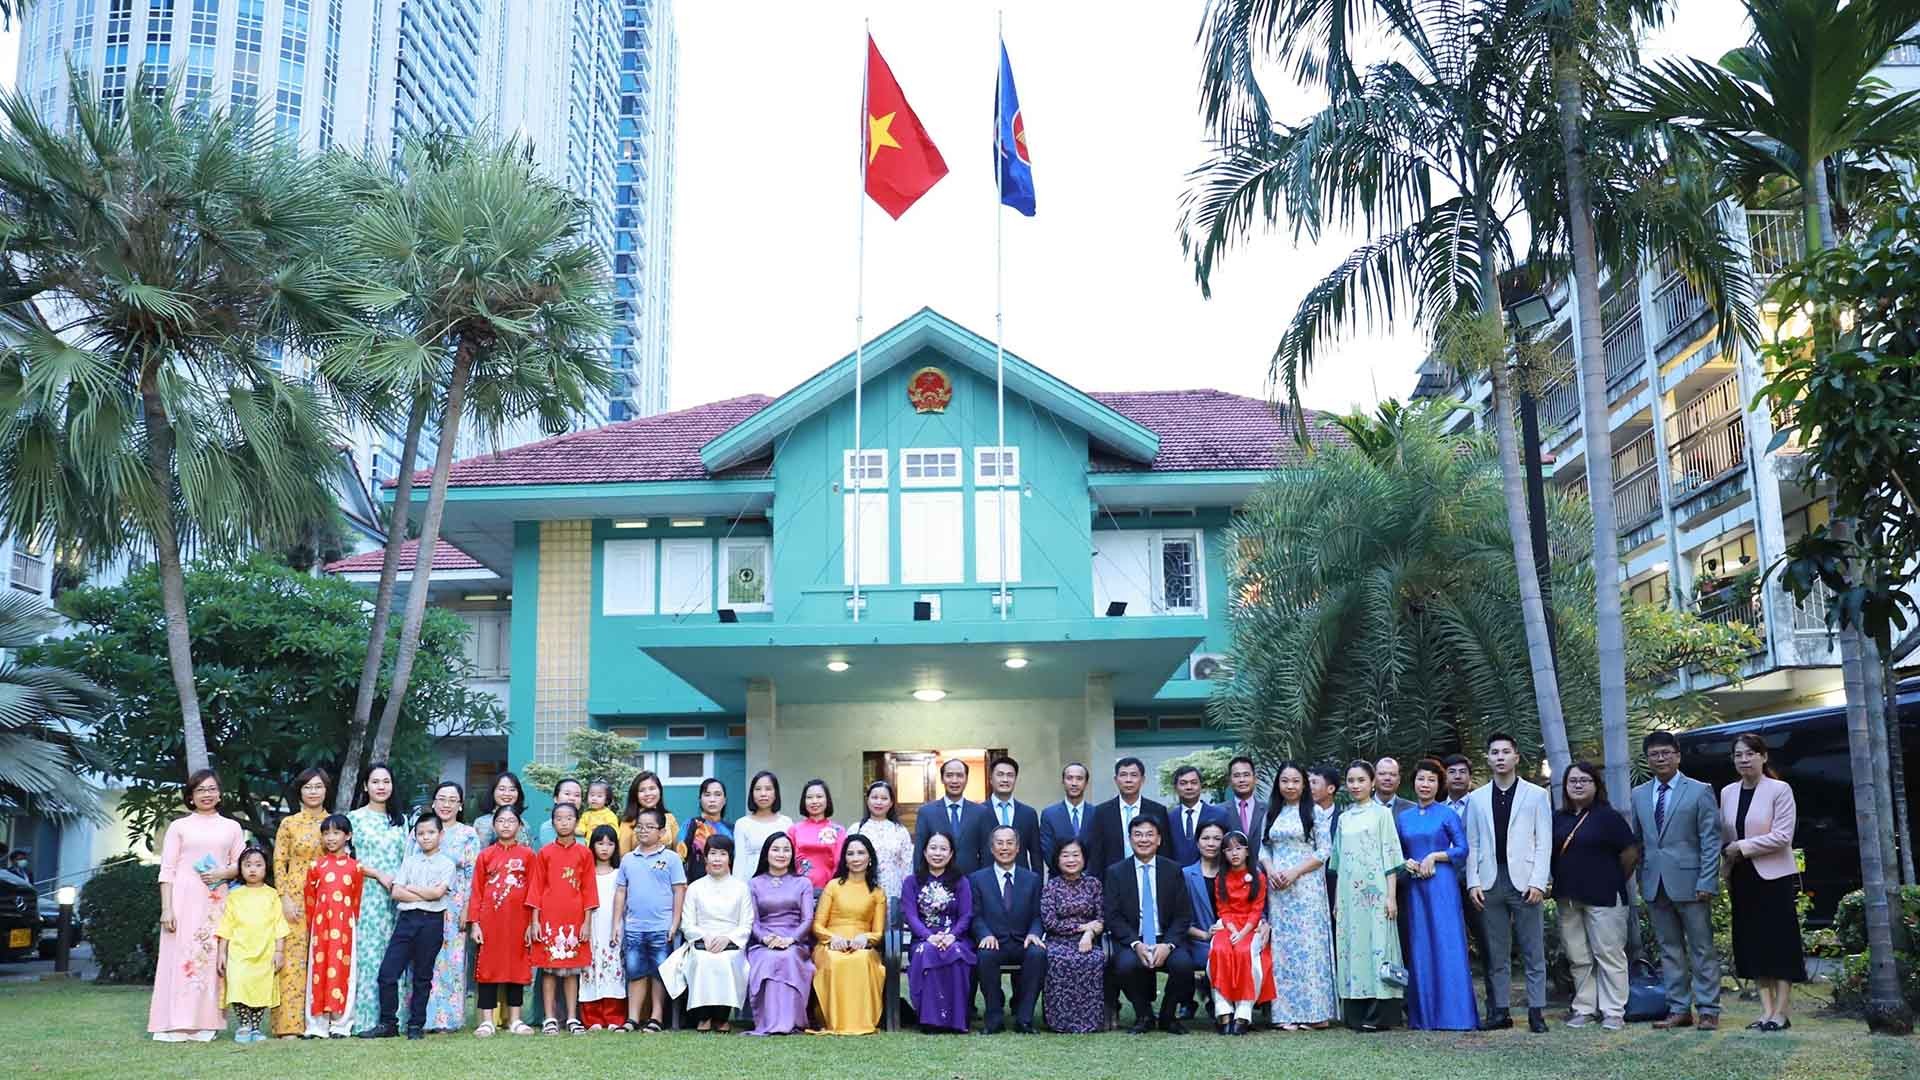 Phó Chủ tịch nước Võ Thị Ánh Xuân thăm Đại sứ quán Việt Nam tại Thái Lan